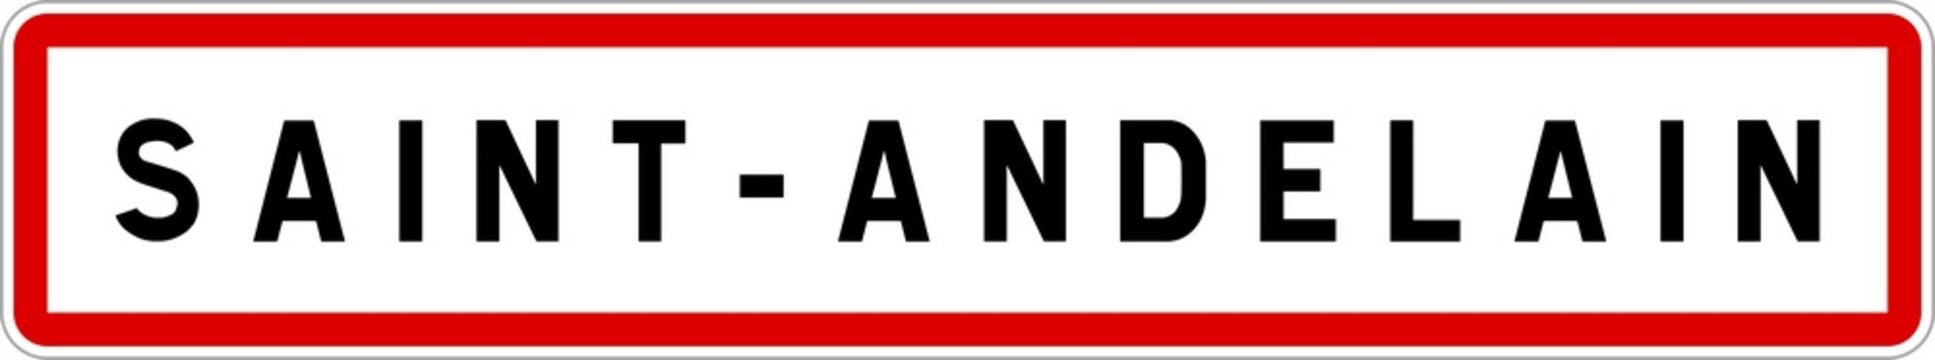 Panneau entrée ville agglomération Saint-Andelain / Town entrance sign Saint-Andelain